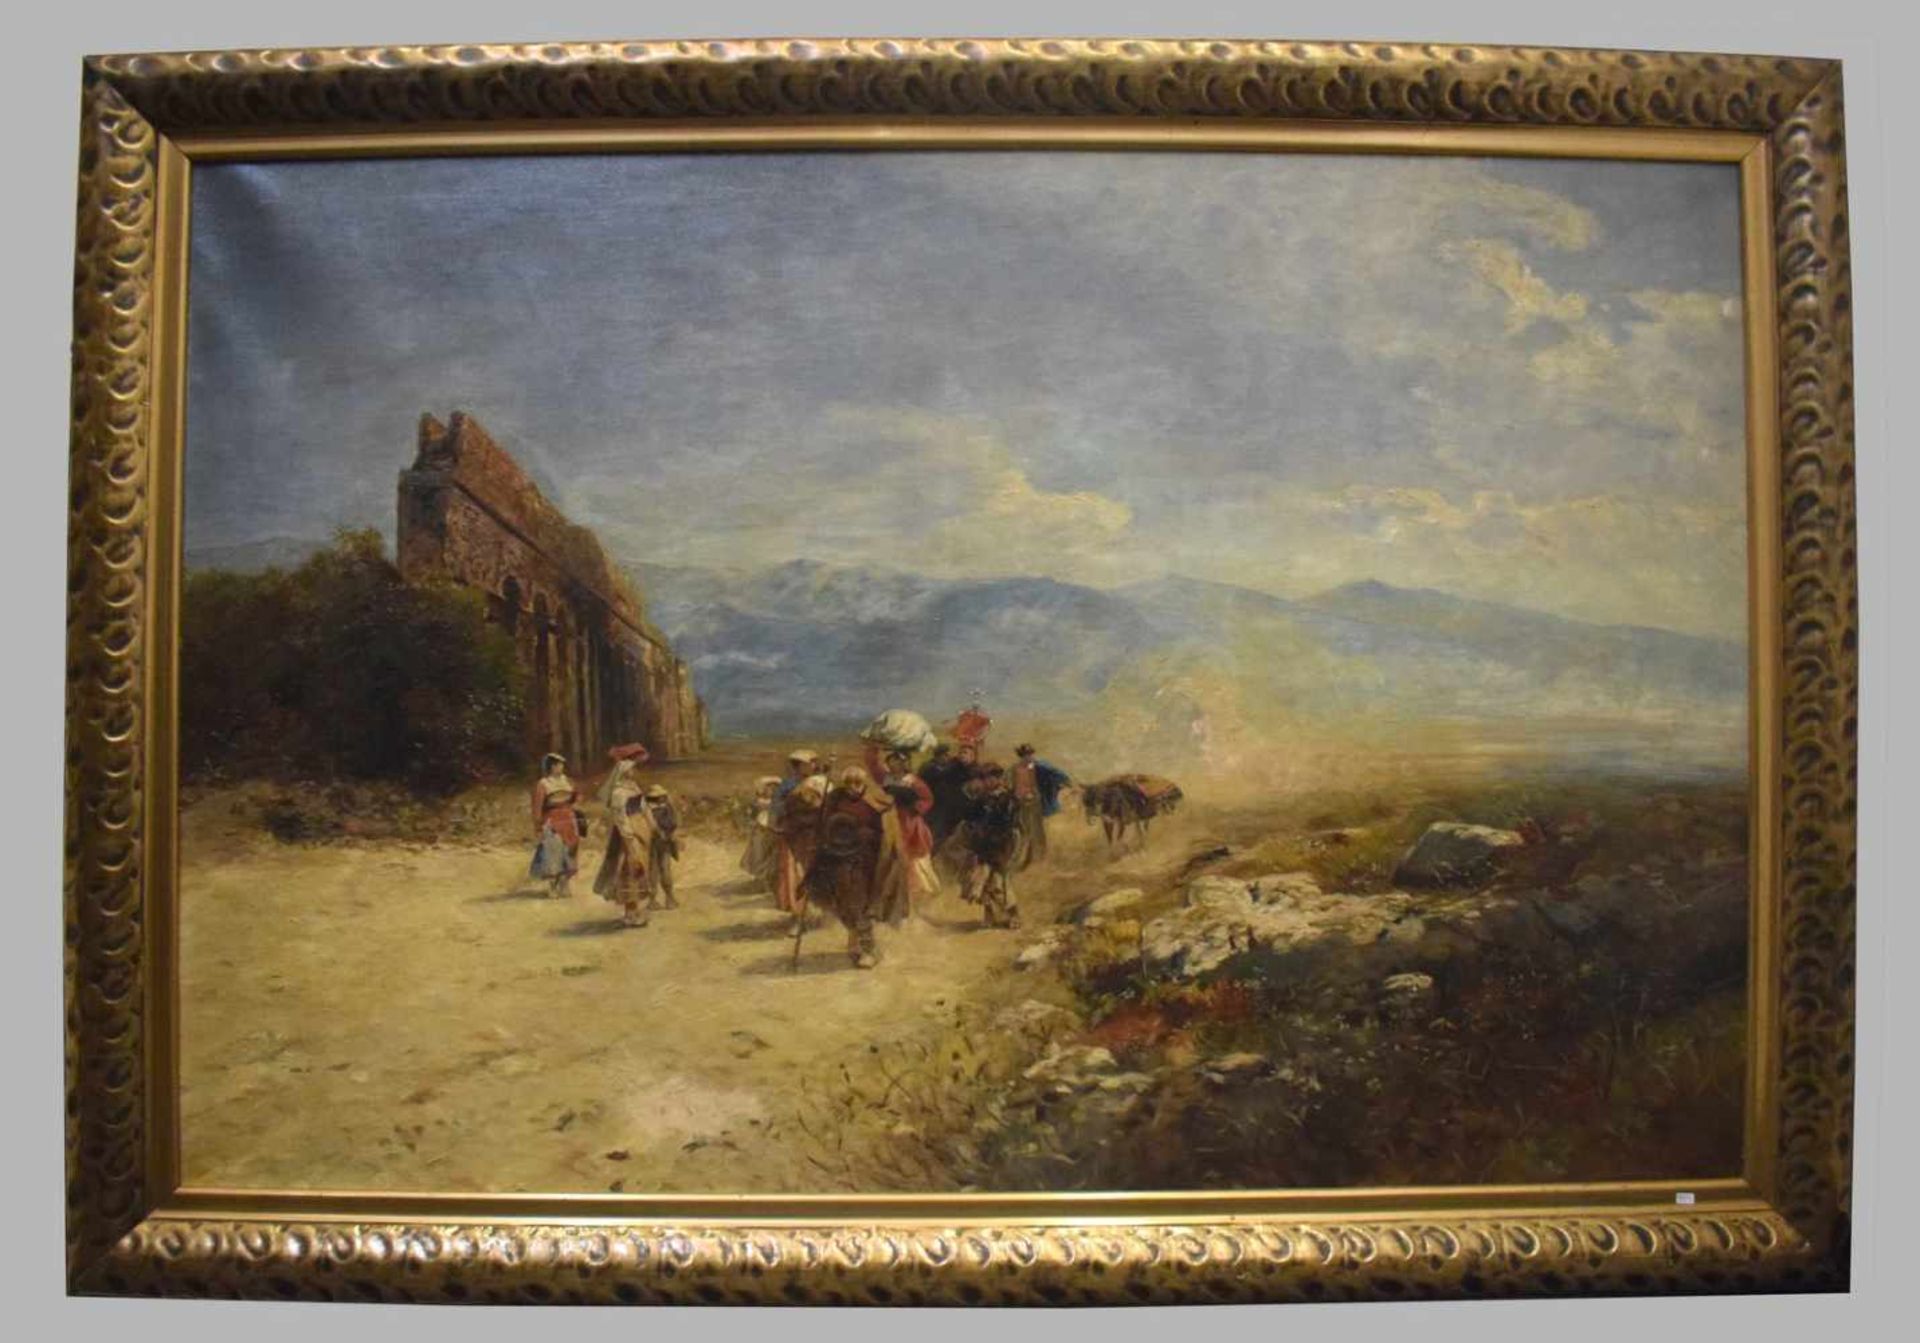 Unbekannter Maler 19. Jh., italienische Prozession, mit Figurenstaffage und altem Viadukt, Öl/